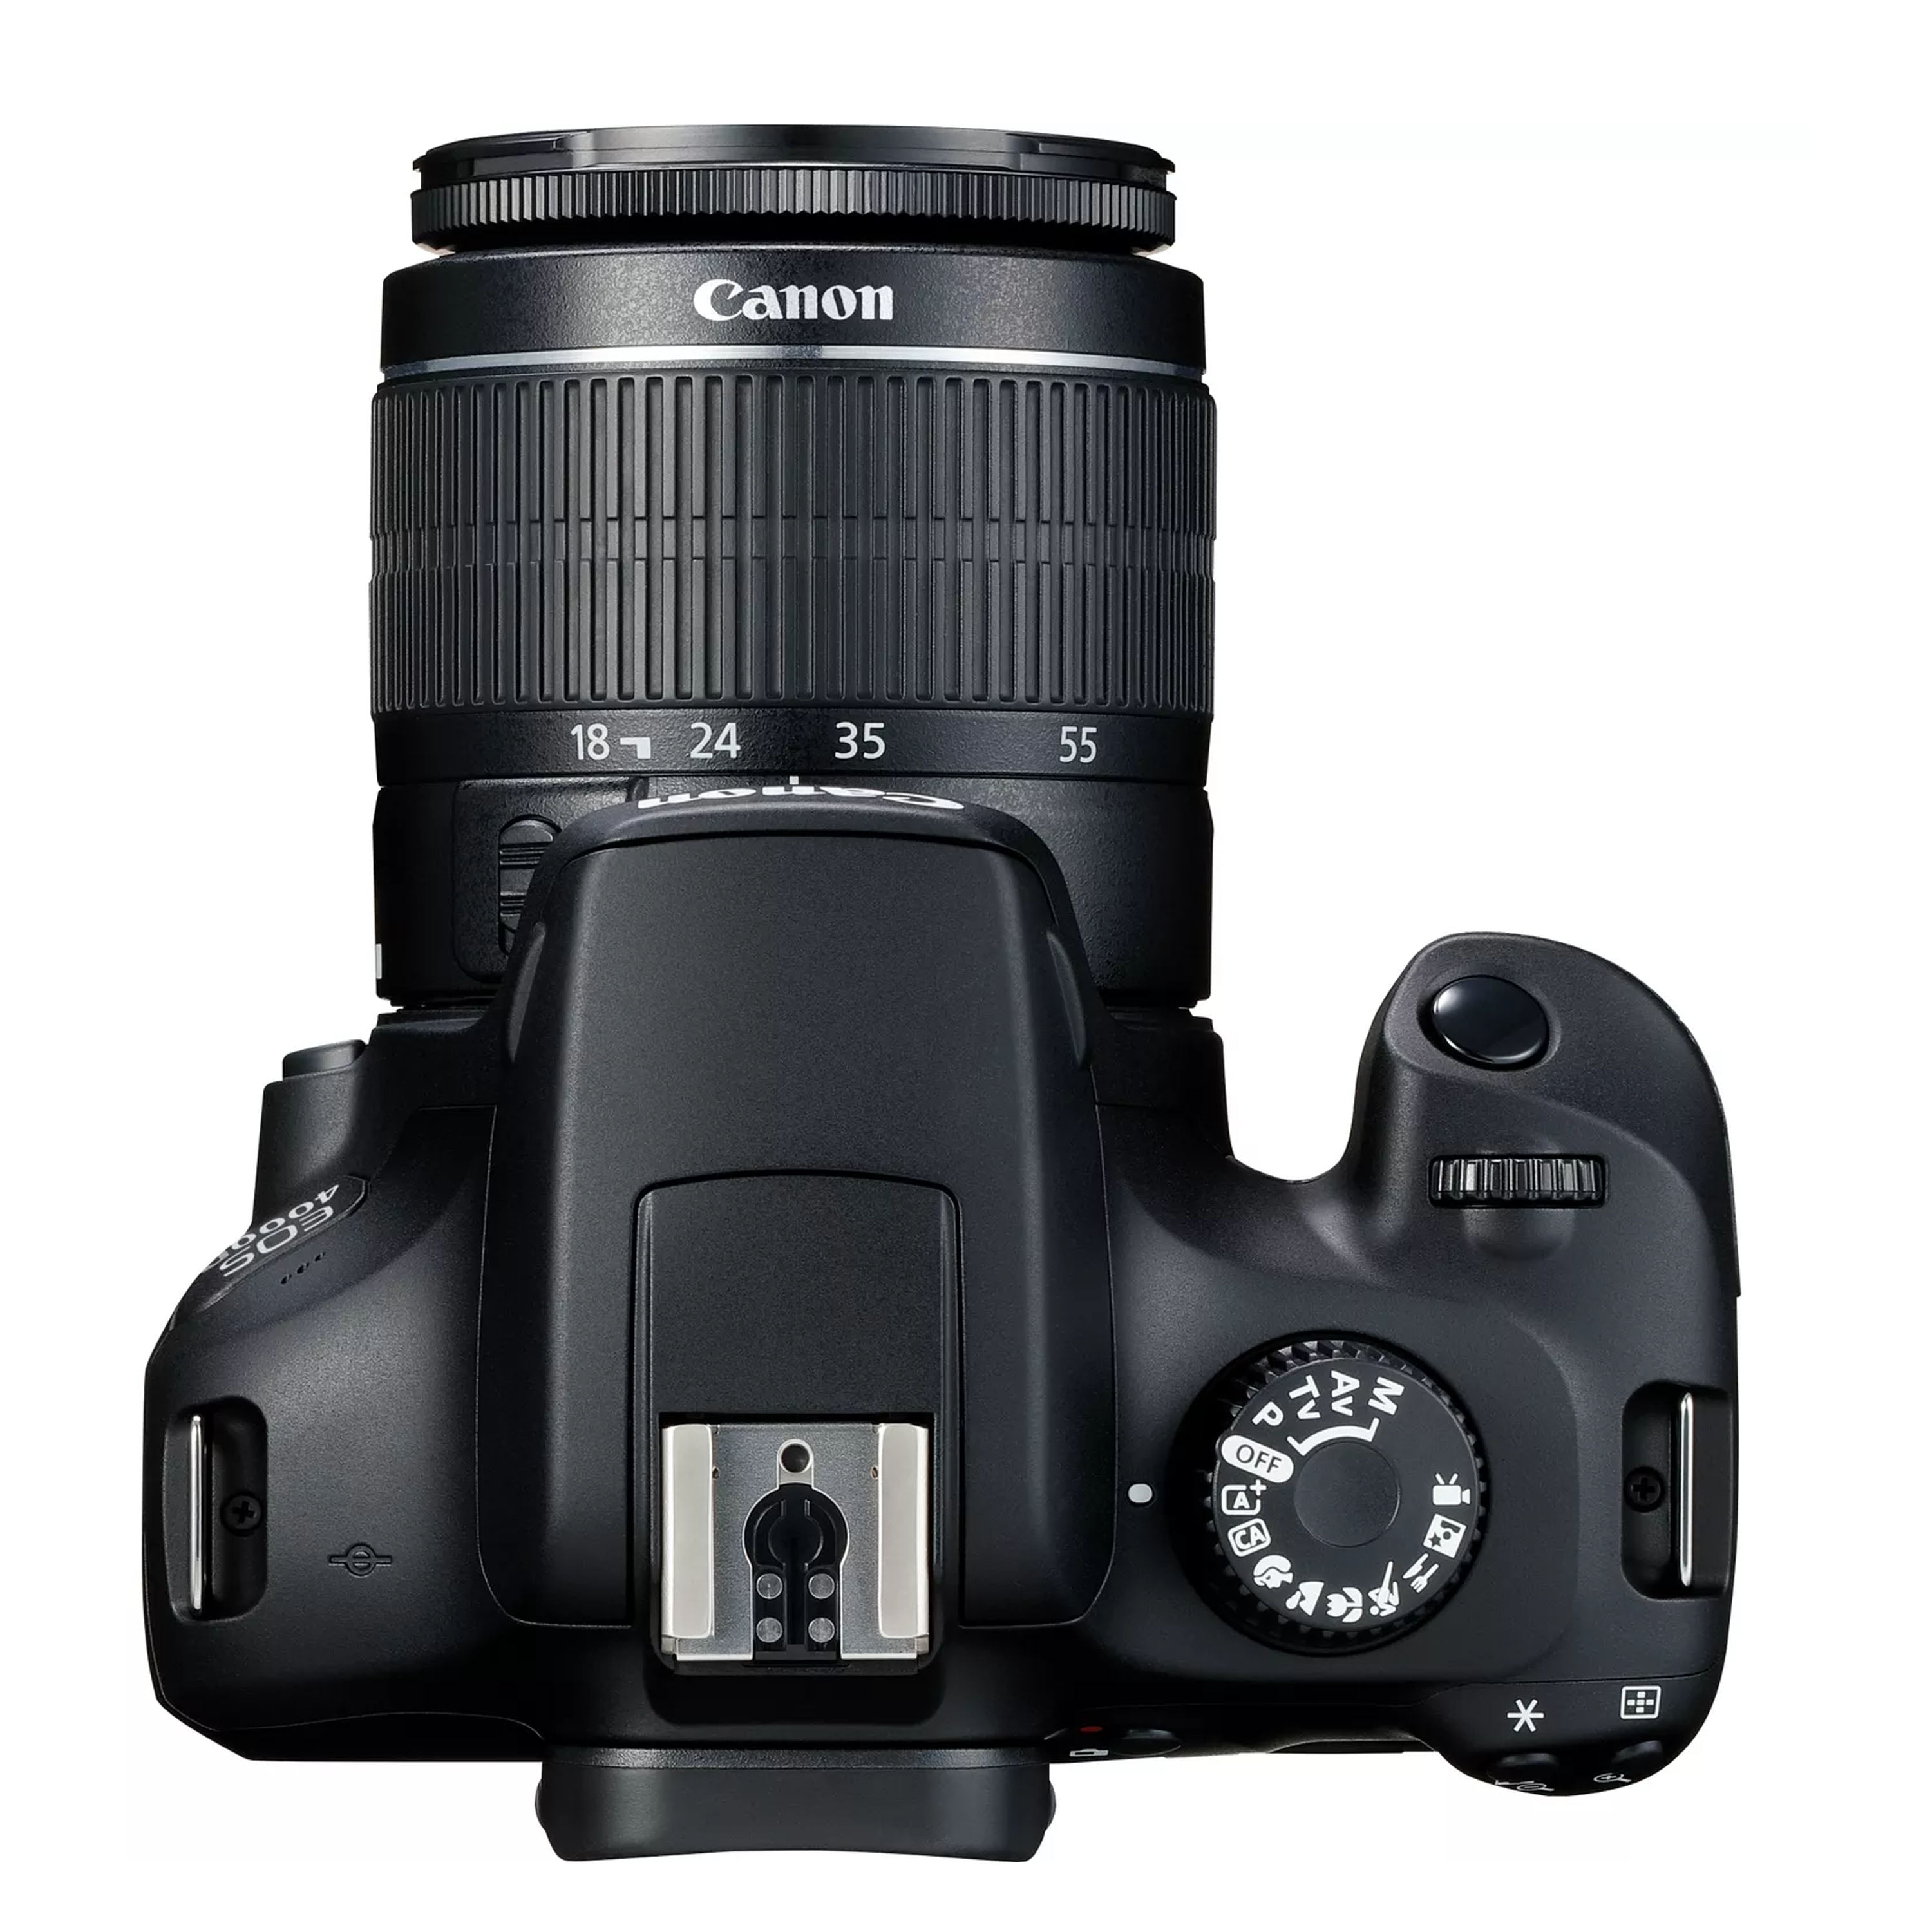 Canon Eos 4000d Rebel T100 Dslr Camera Advanced Kit Includes Ef-s 18-55mm  Zoom Lens Sandisk 128gb Card Filter Kit & More - Manufacturer Refurbished :  Target